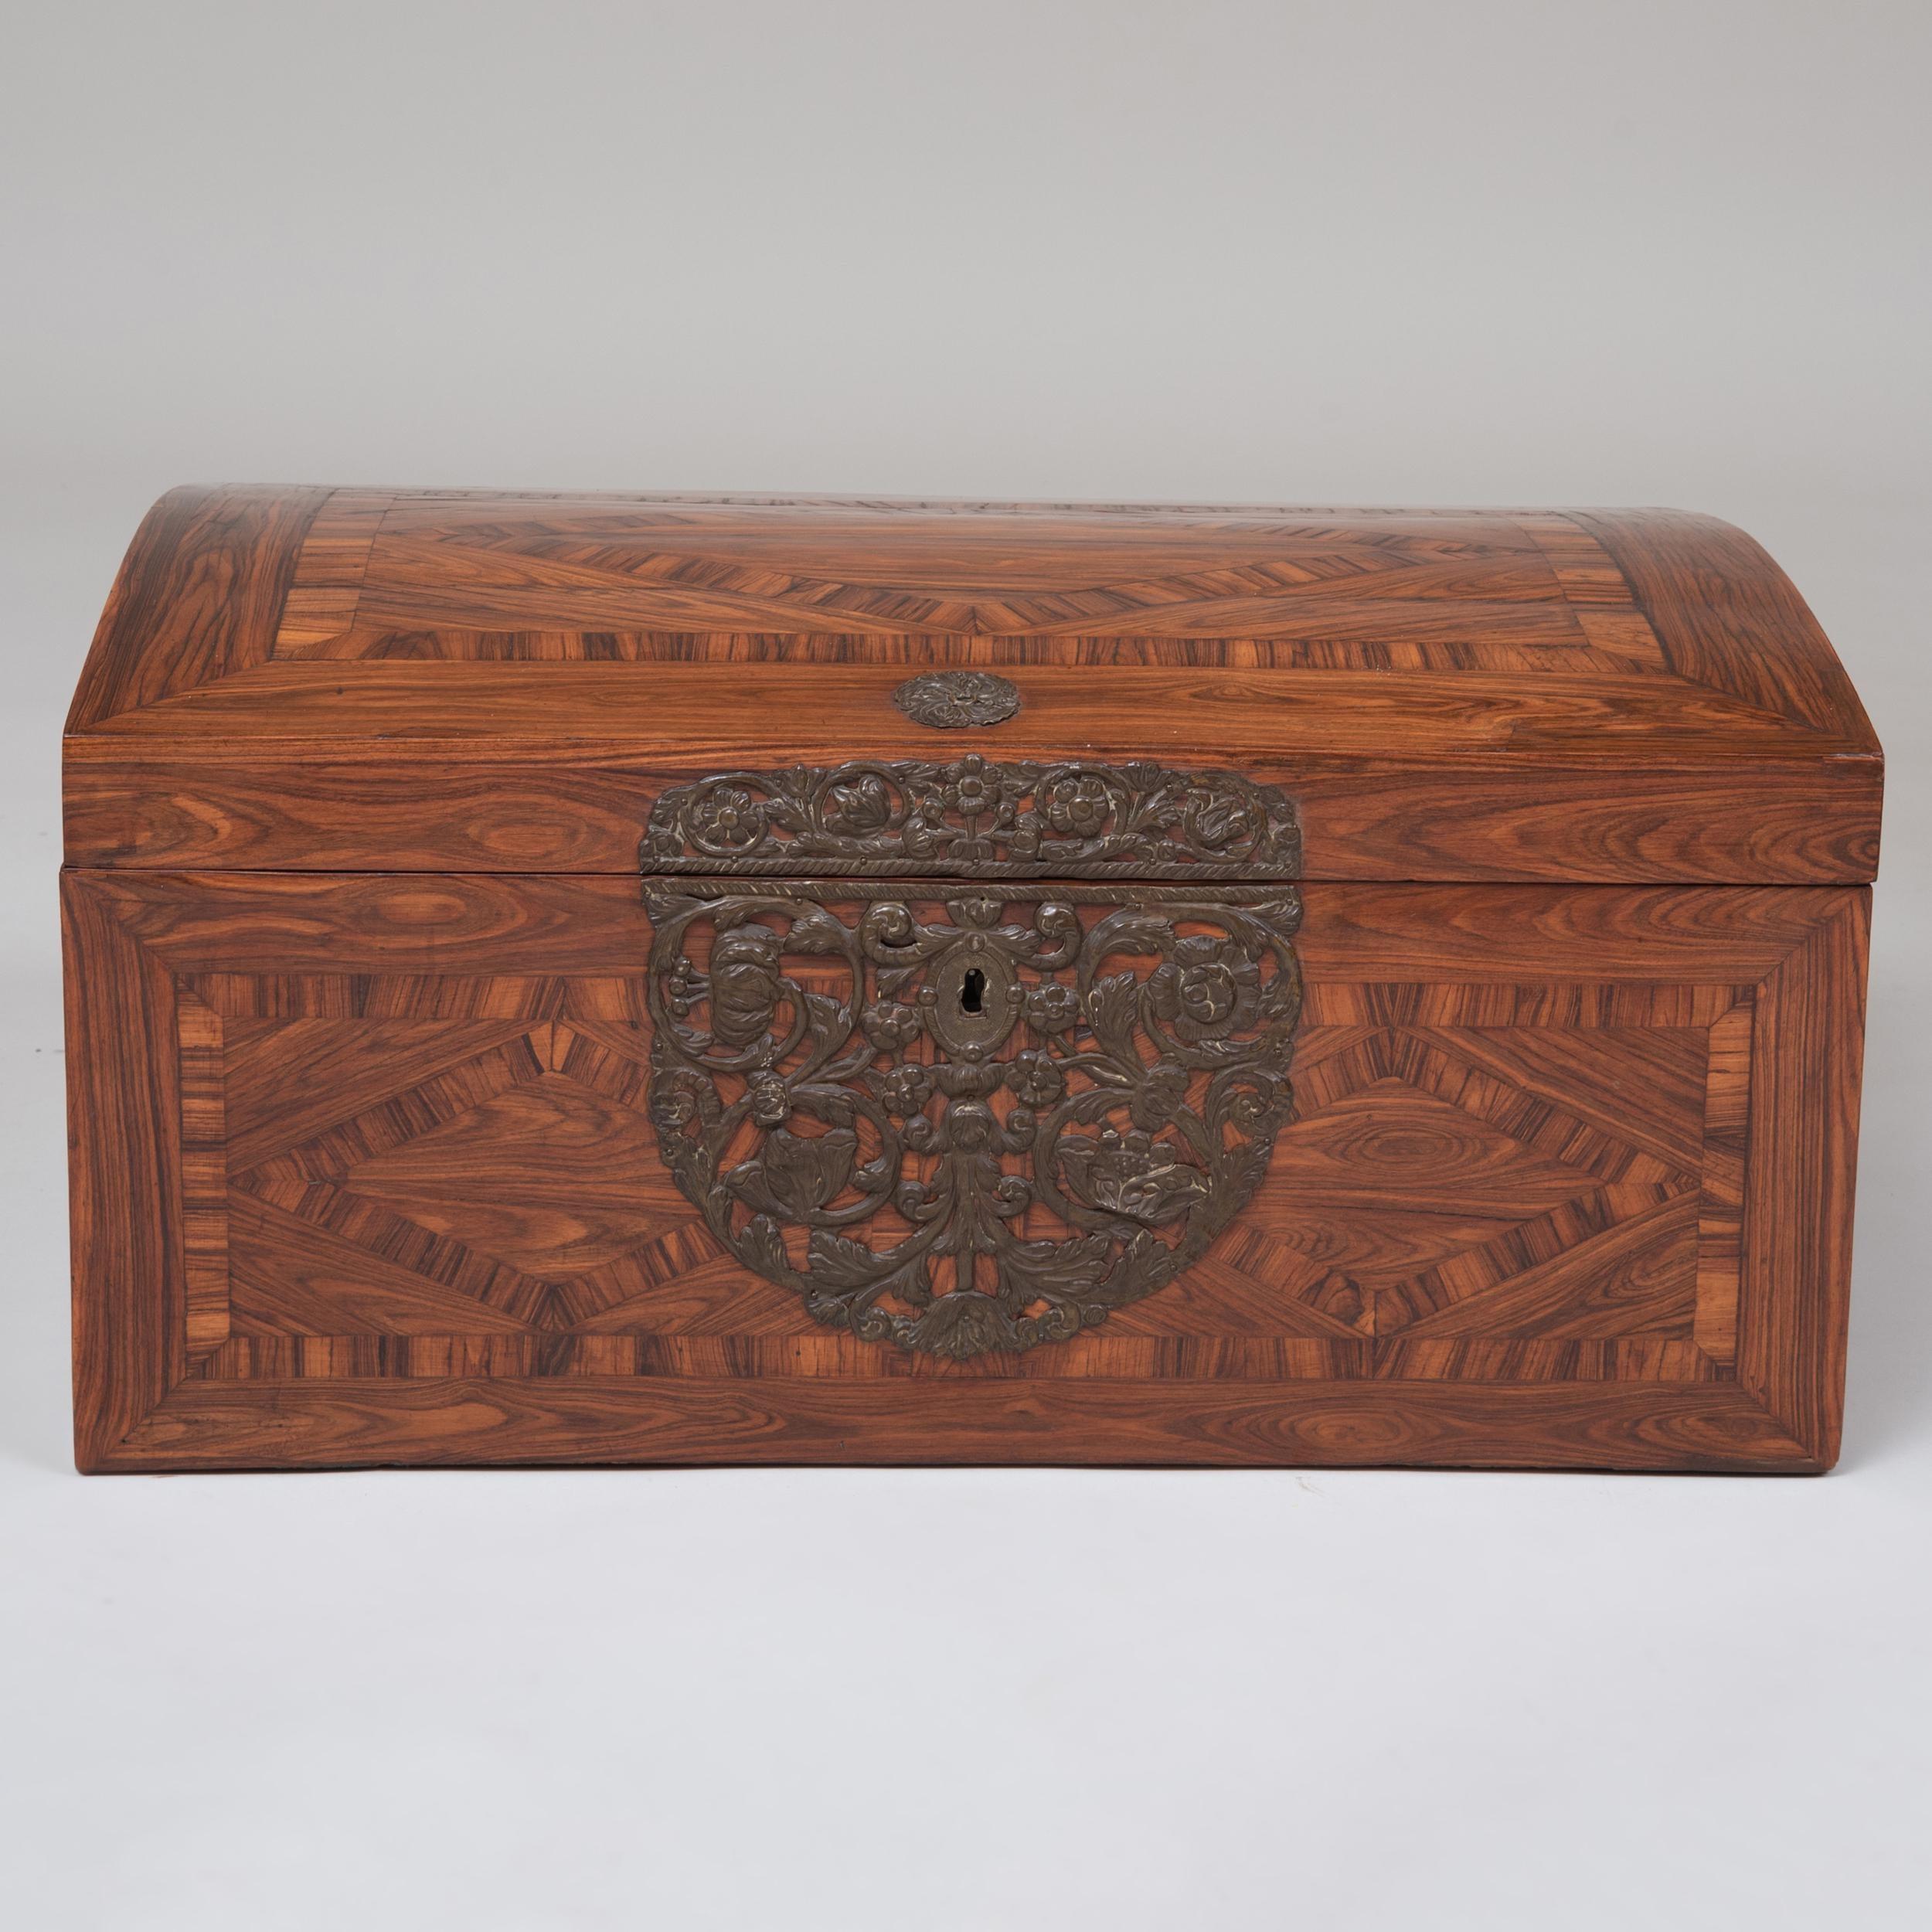 Belle boîte en forme de dôme du XVIIe siècle, avec placage de marqueterie de bois de roi hautement figuré, disposé selon un motif géométrique, la face avant présentant un écusson en laiton élaboré, percé et gaufré, l'ensemble présentant un grain et